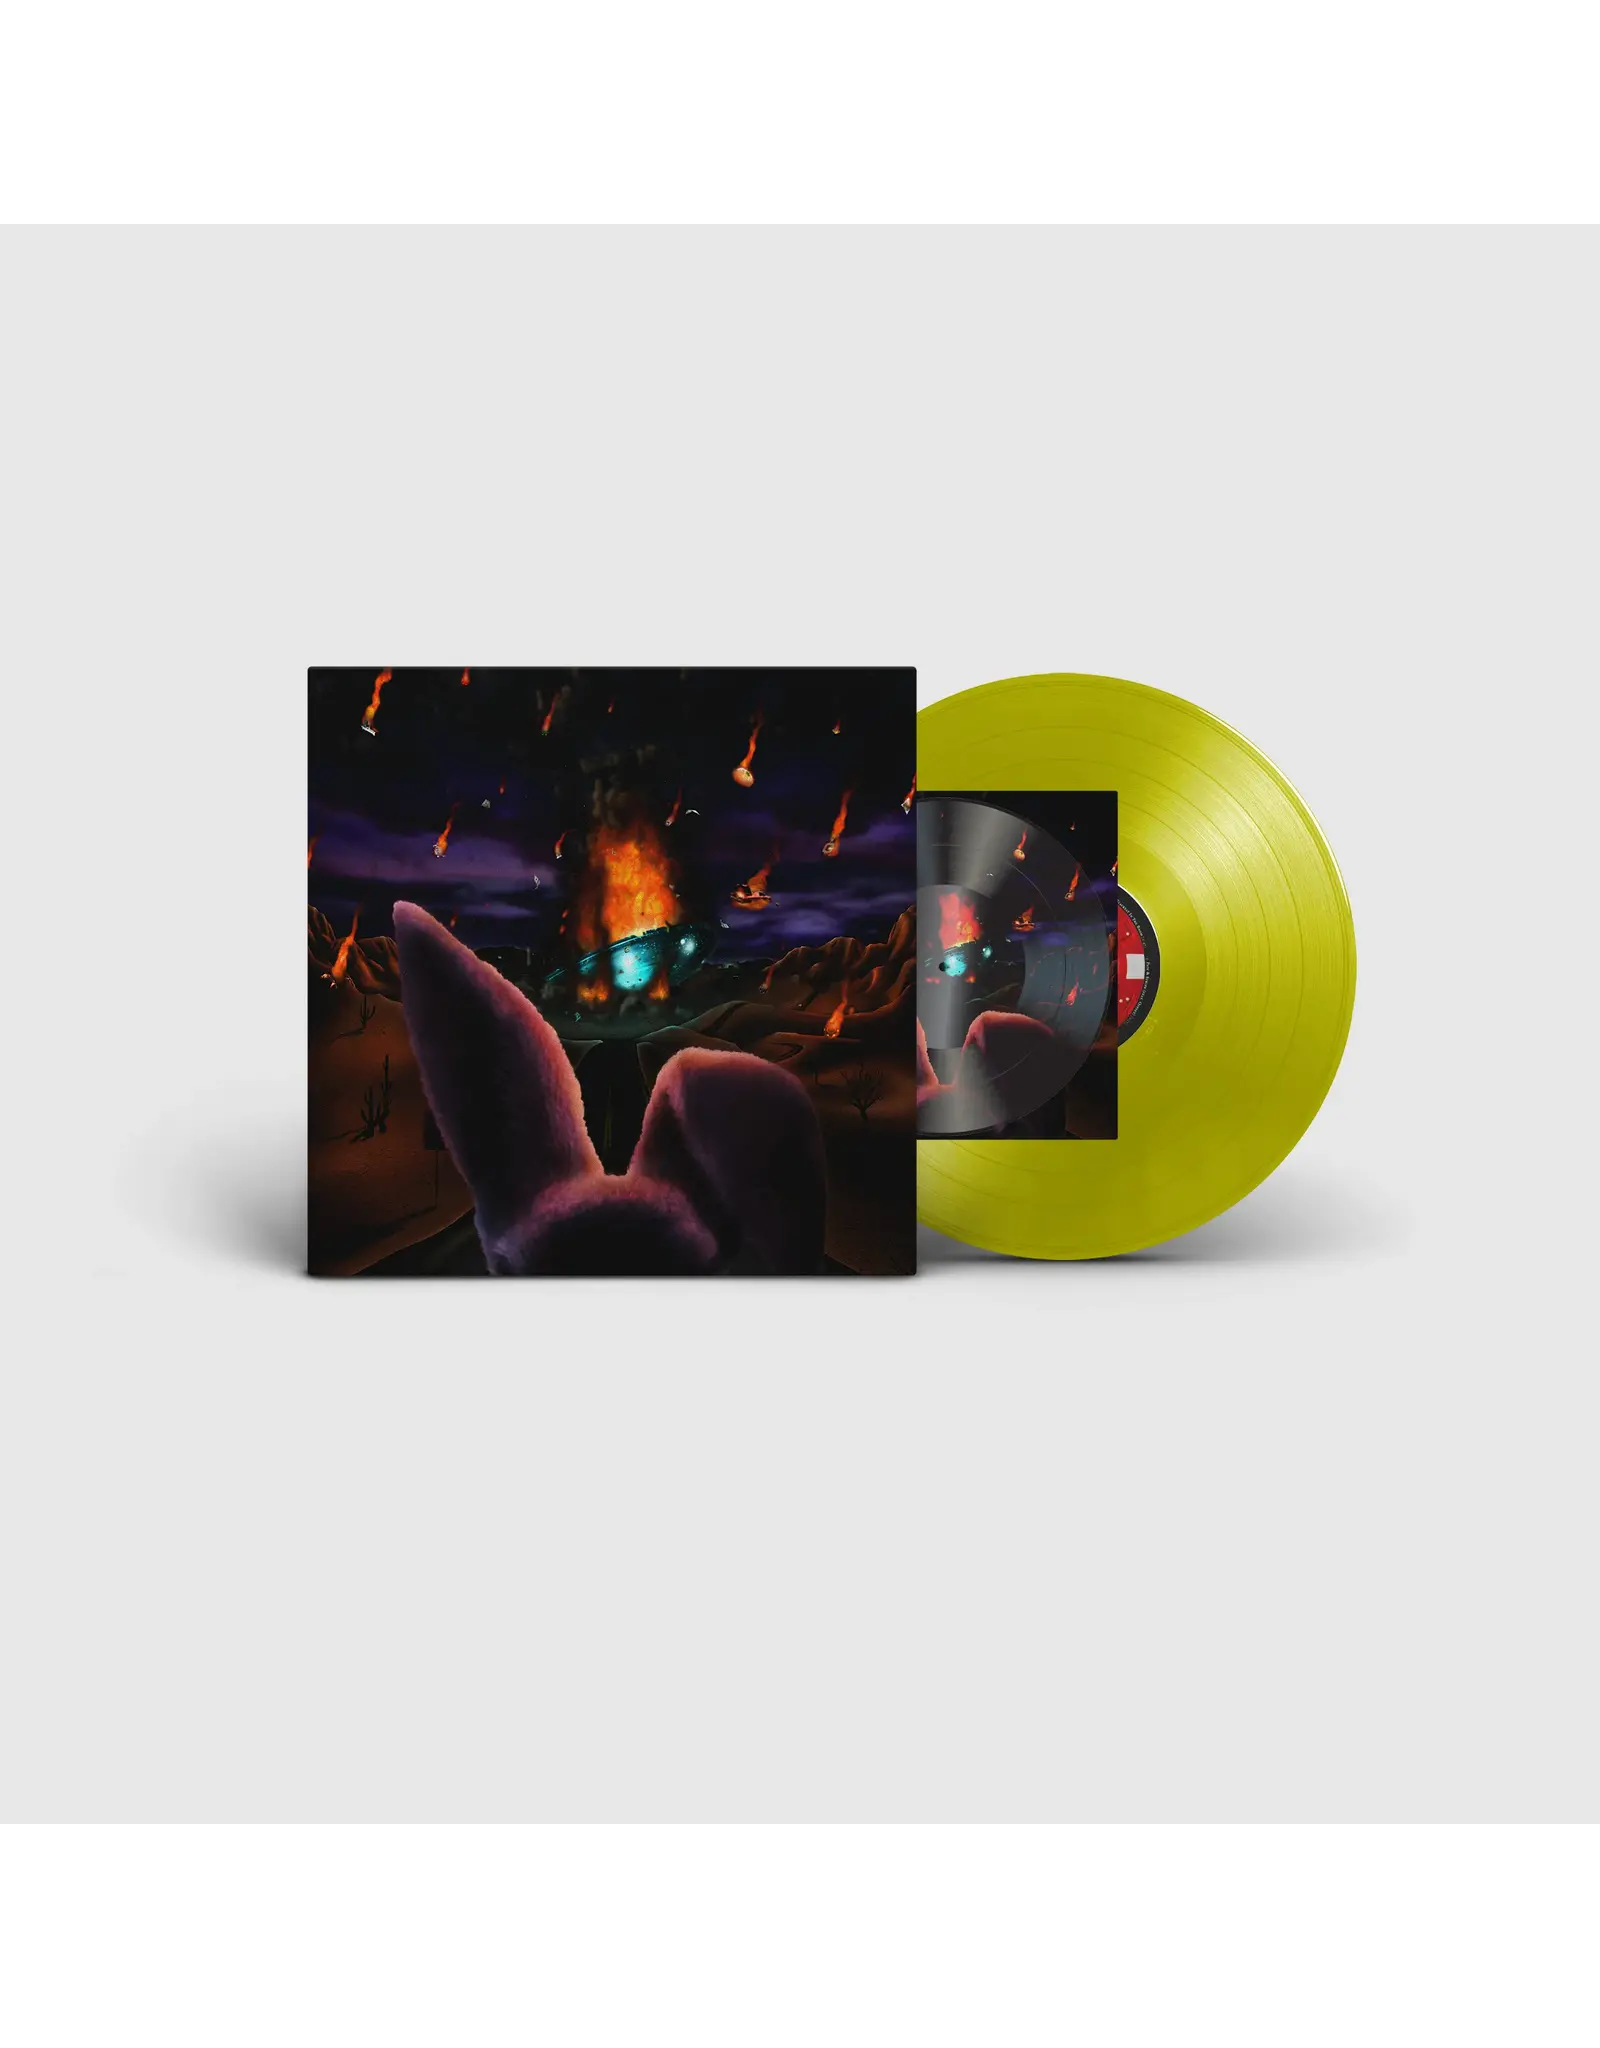 Freddie Gibbs - $oul $old $eparately (Exclusive Neon Yellow Vinyl)